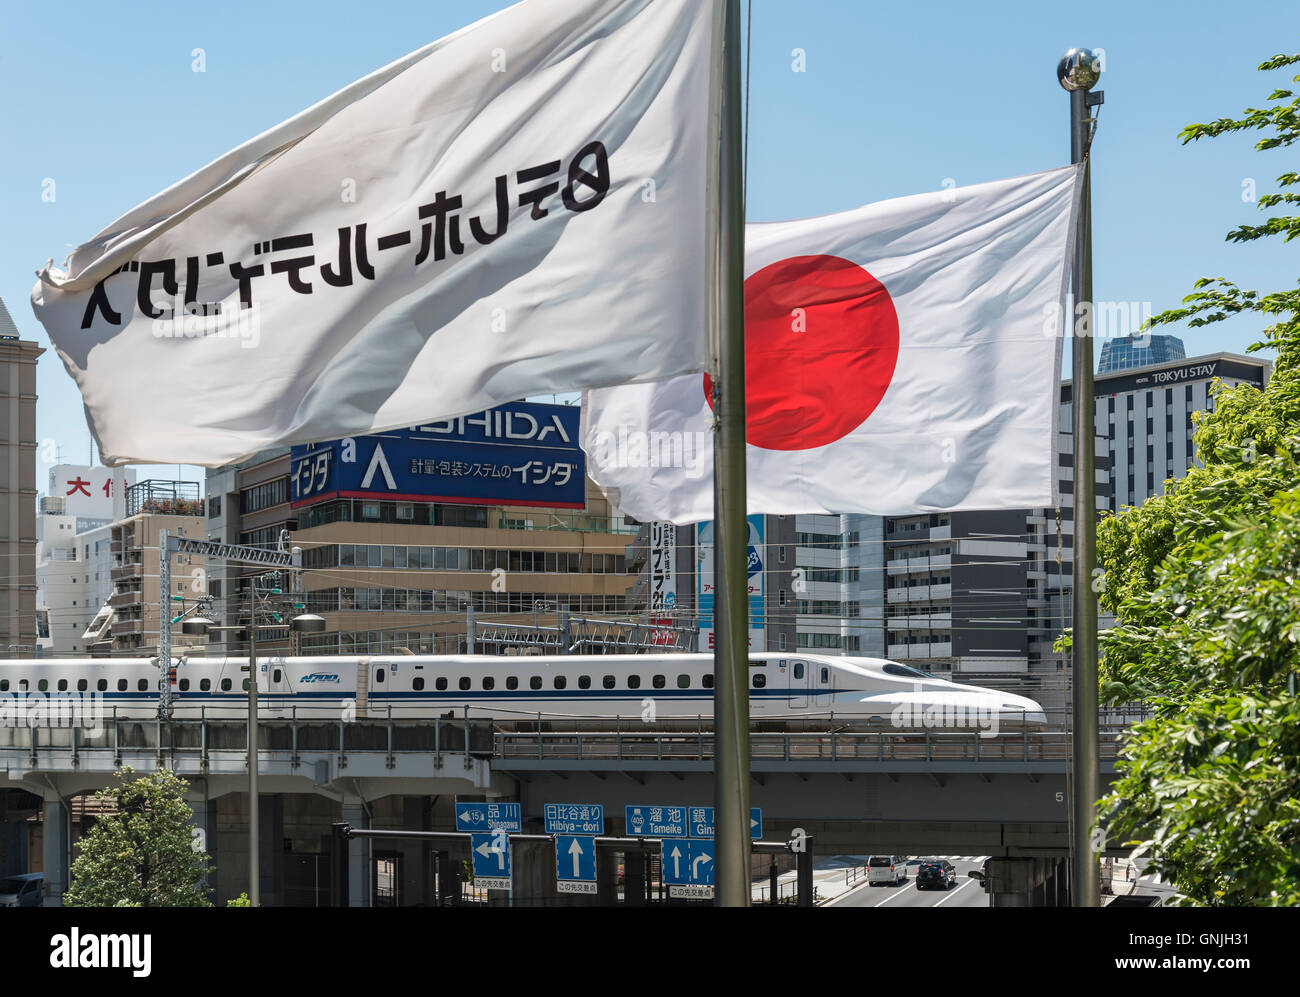 Bullet train Shinkansen sur un pont dans le quartier de Shiodome à Minato, Tokyo, Japon Banque D'Images